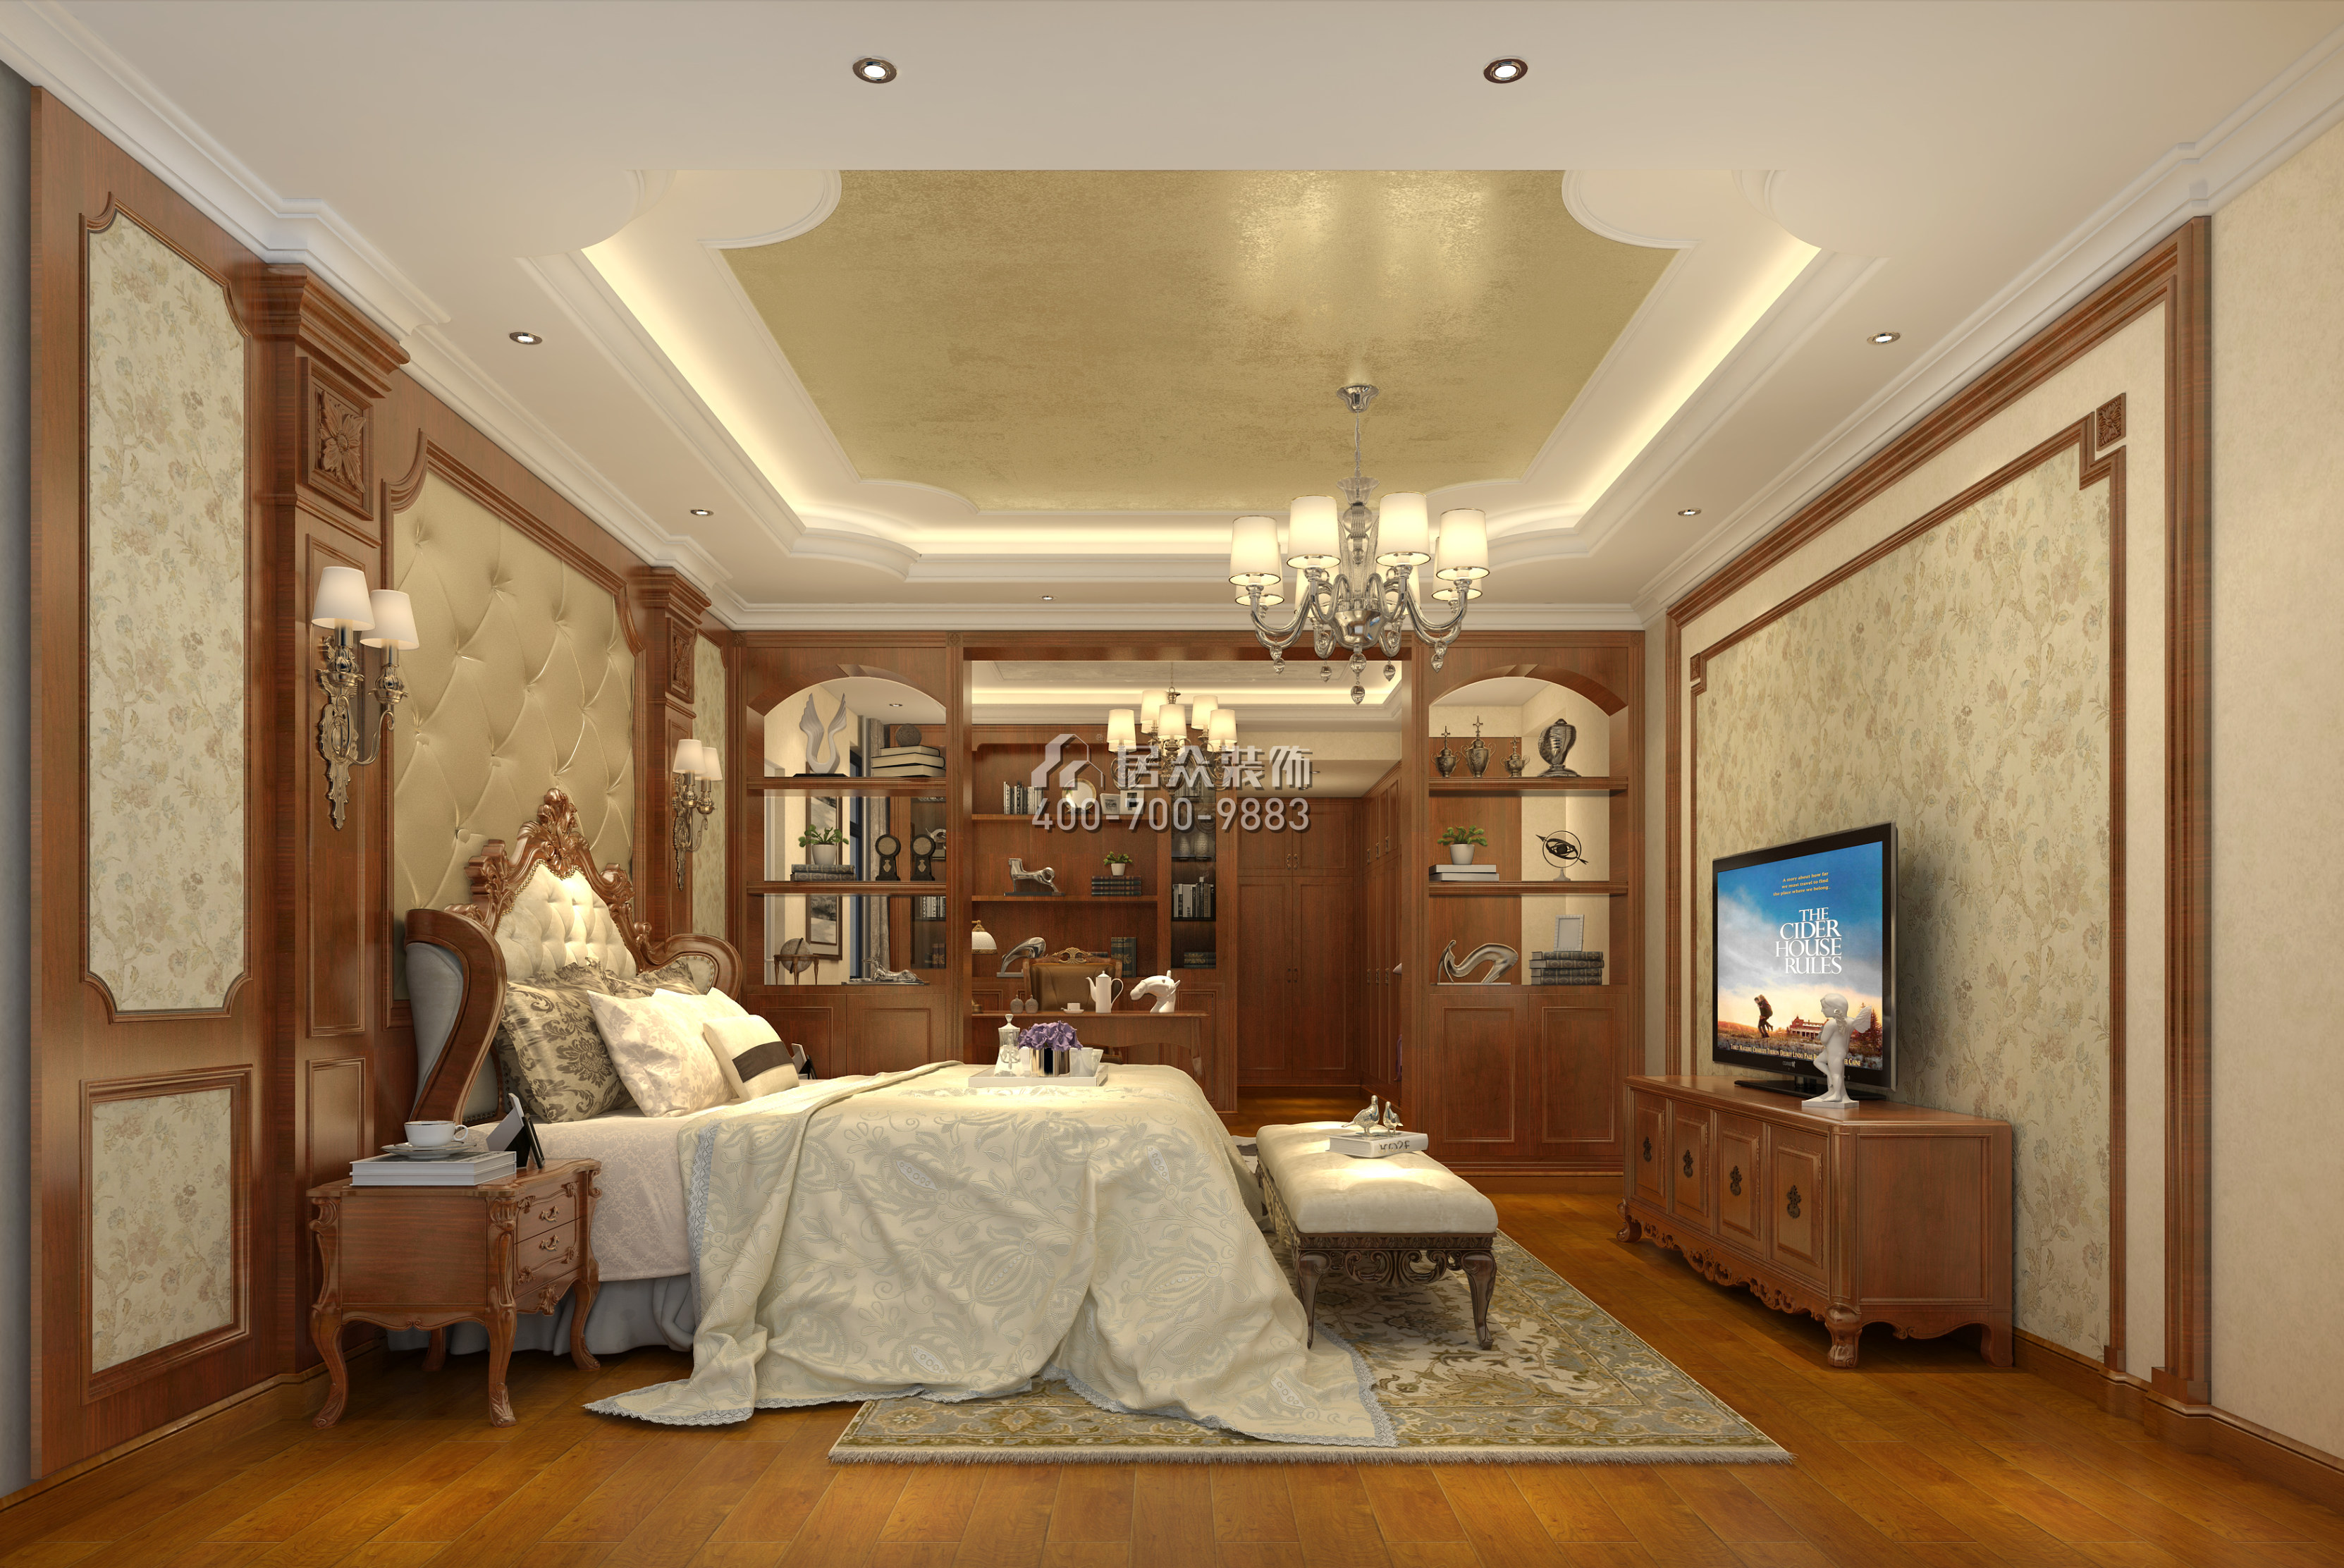 懿峰雅居244平方米歐式風格平層戶型臥室裝修效果圖